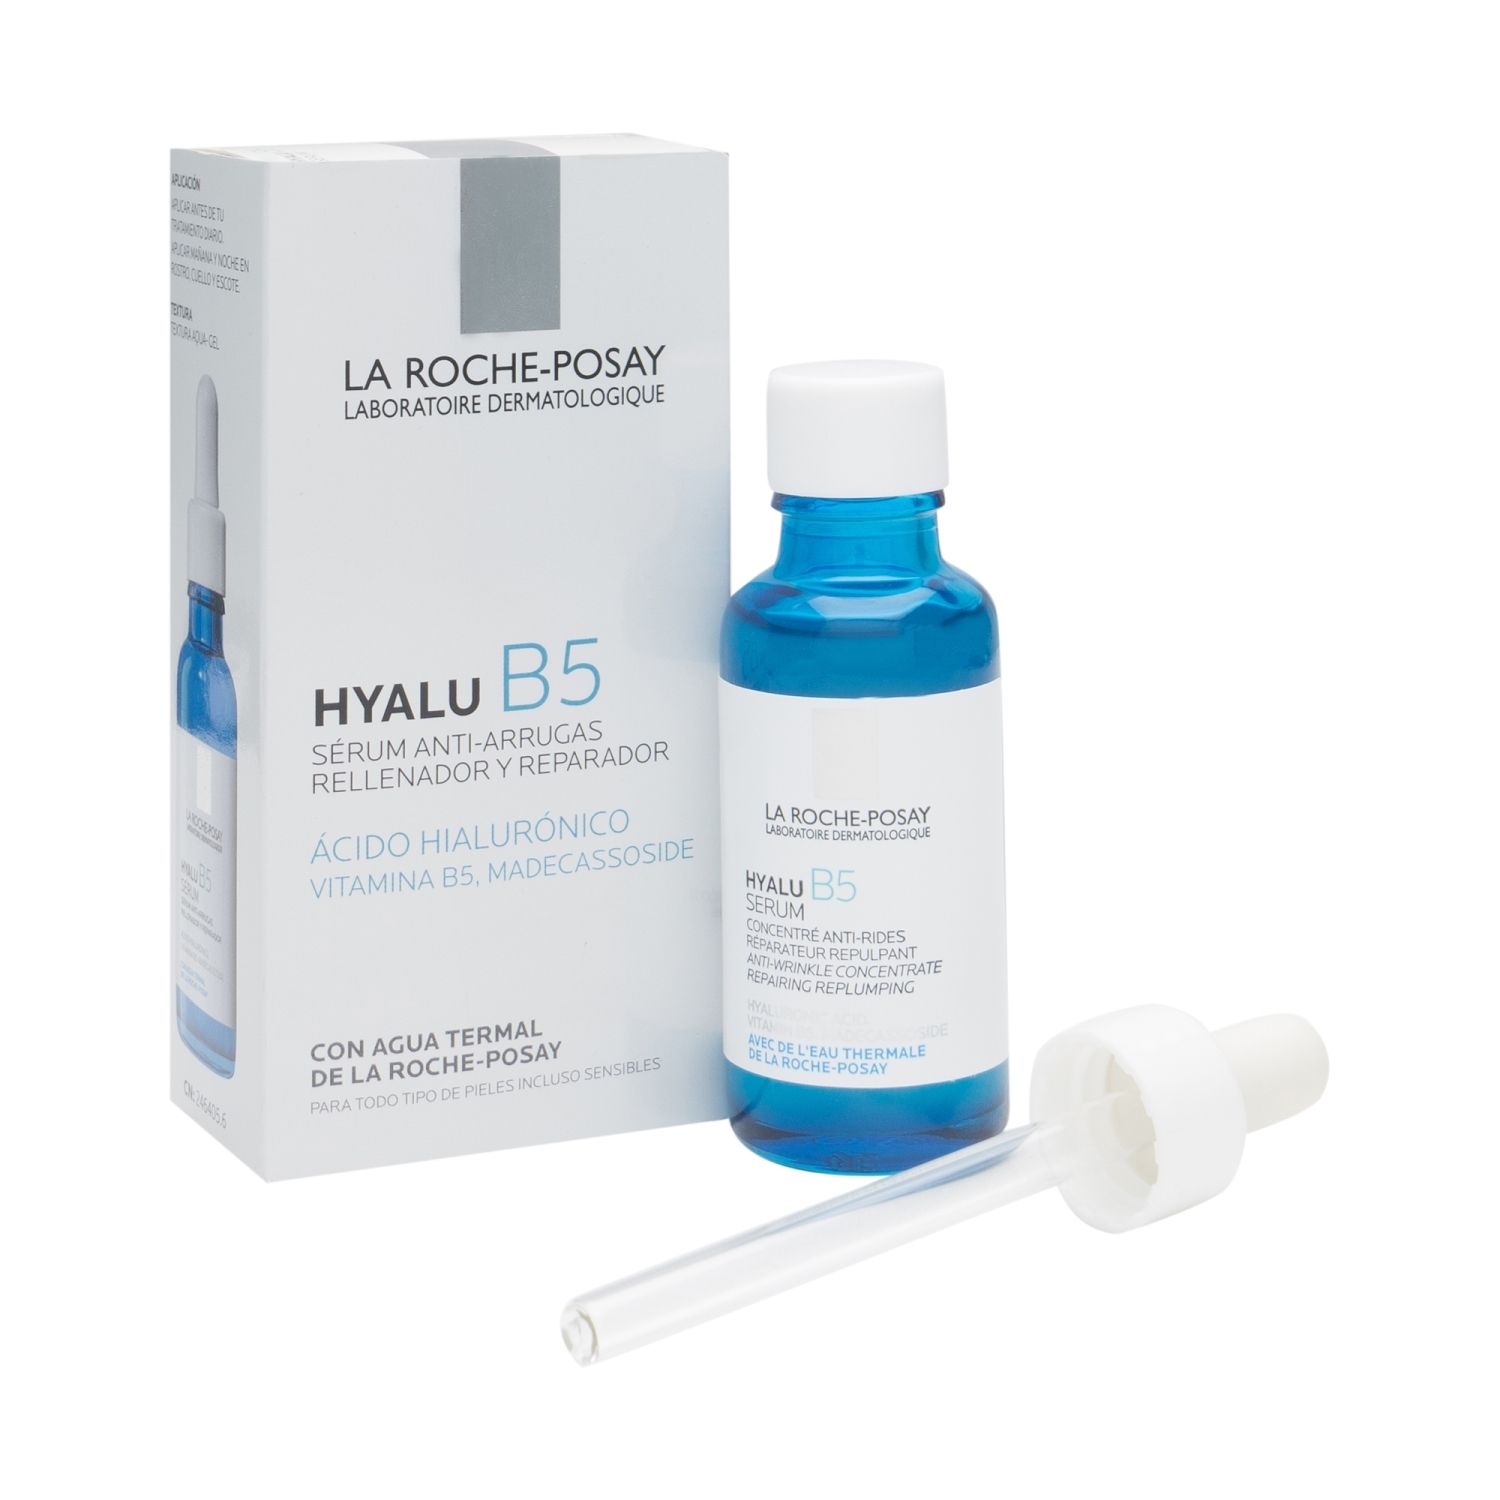 La Roche-Posay Hyalu B5 Sérum + regalo serum acido hialurónico